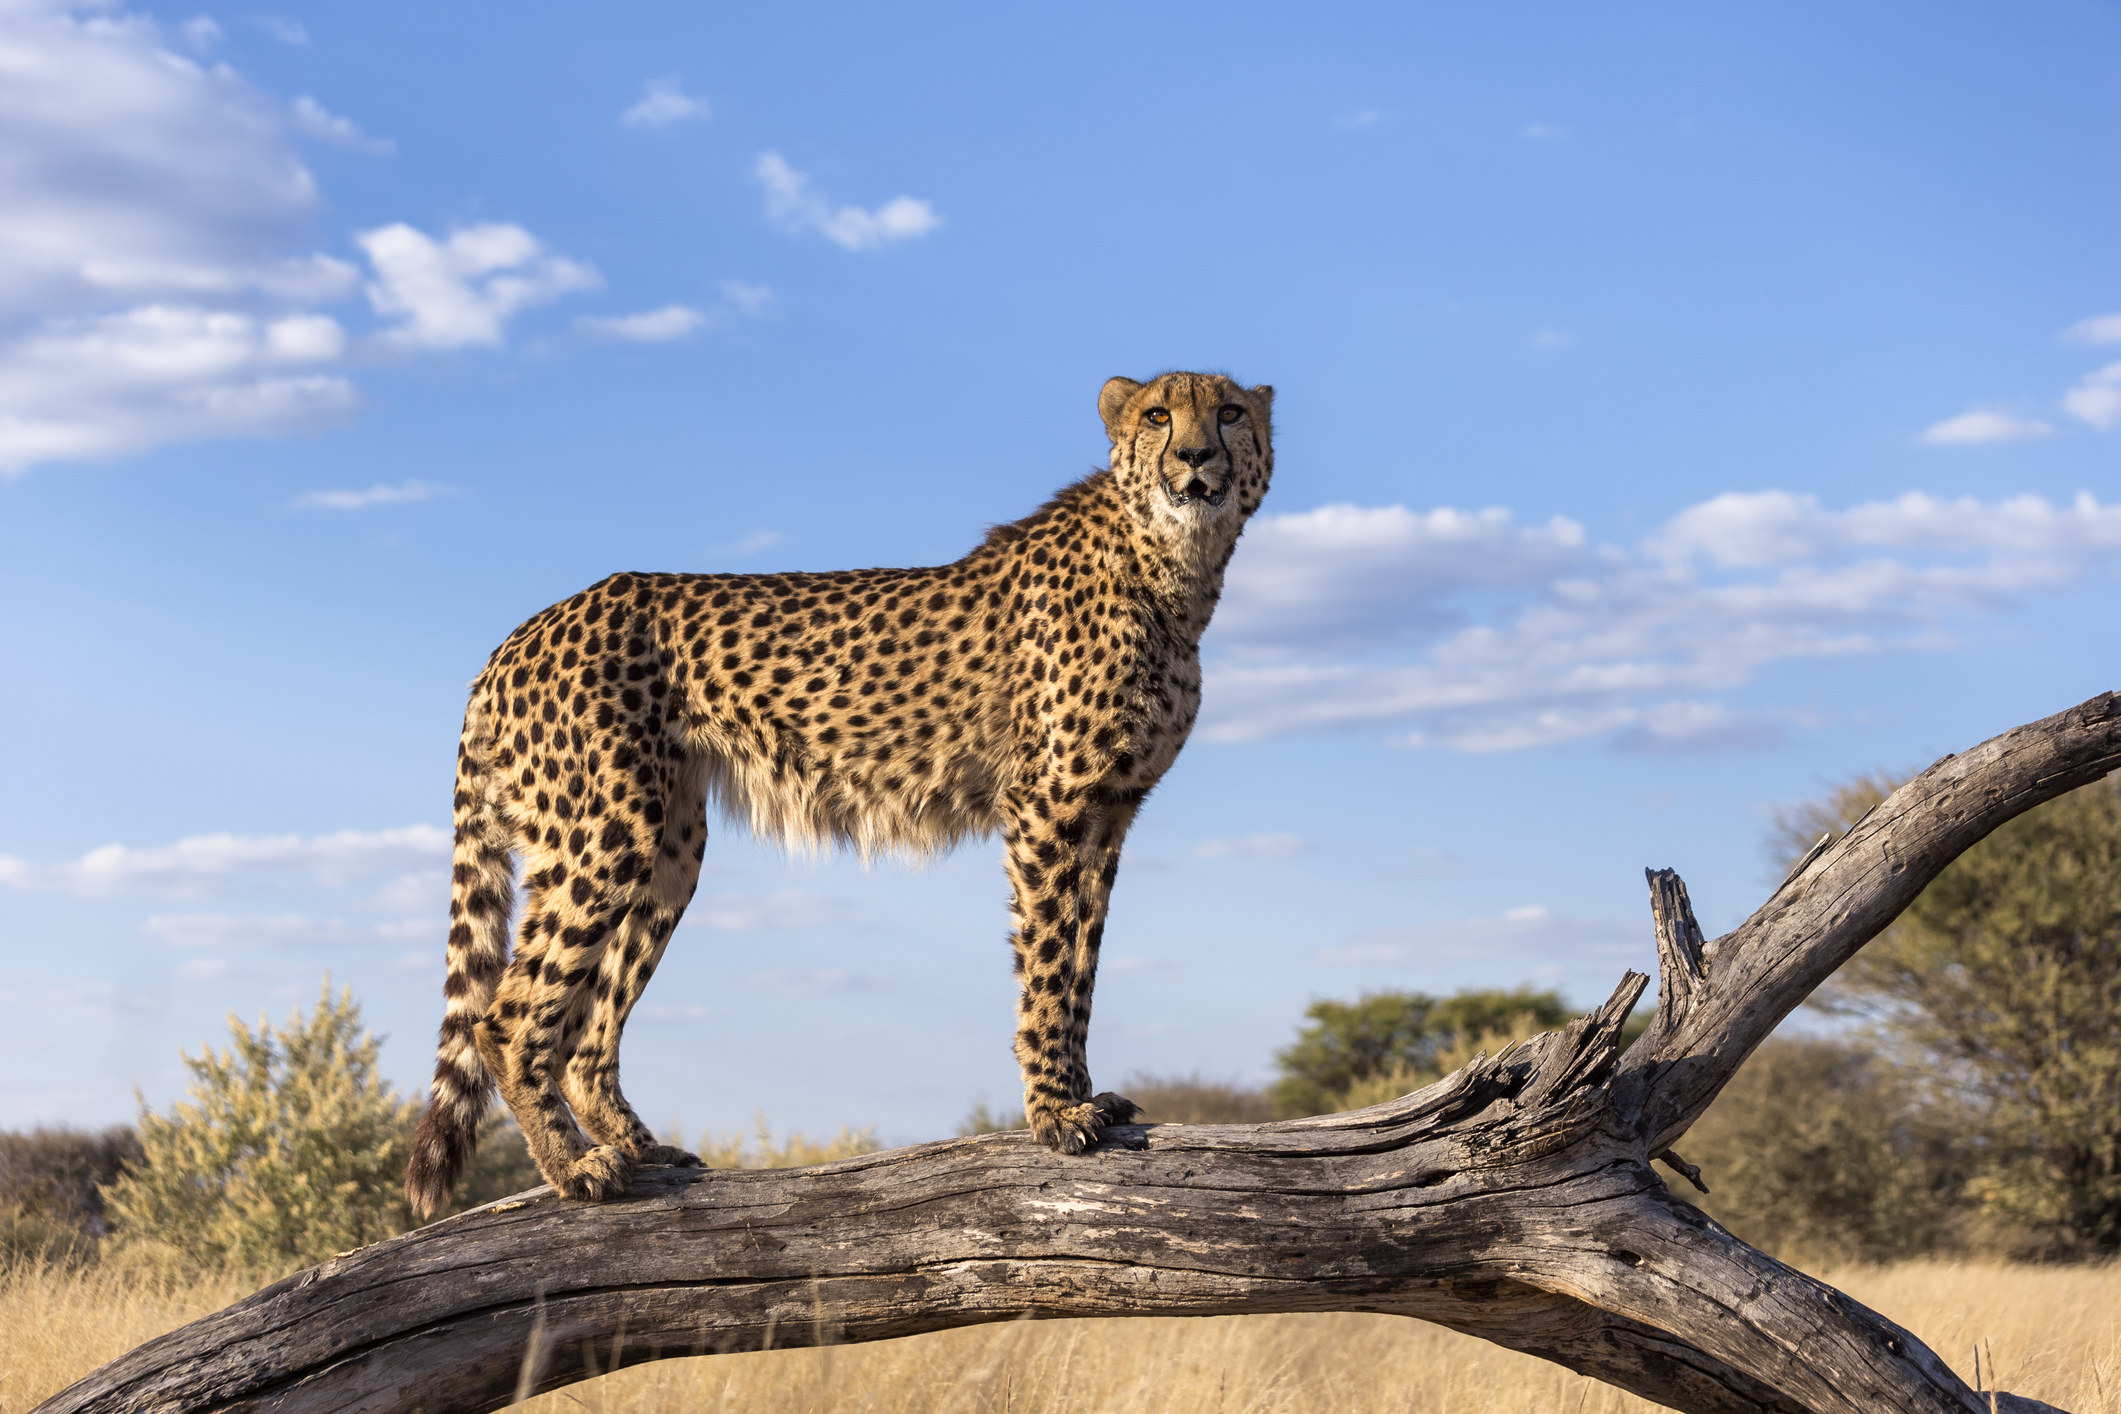 a cheetah on a log